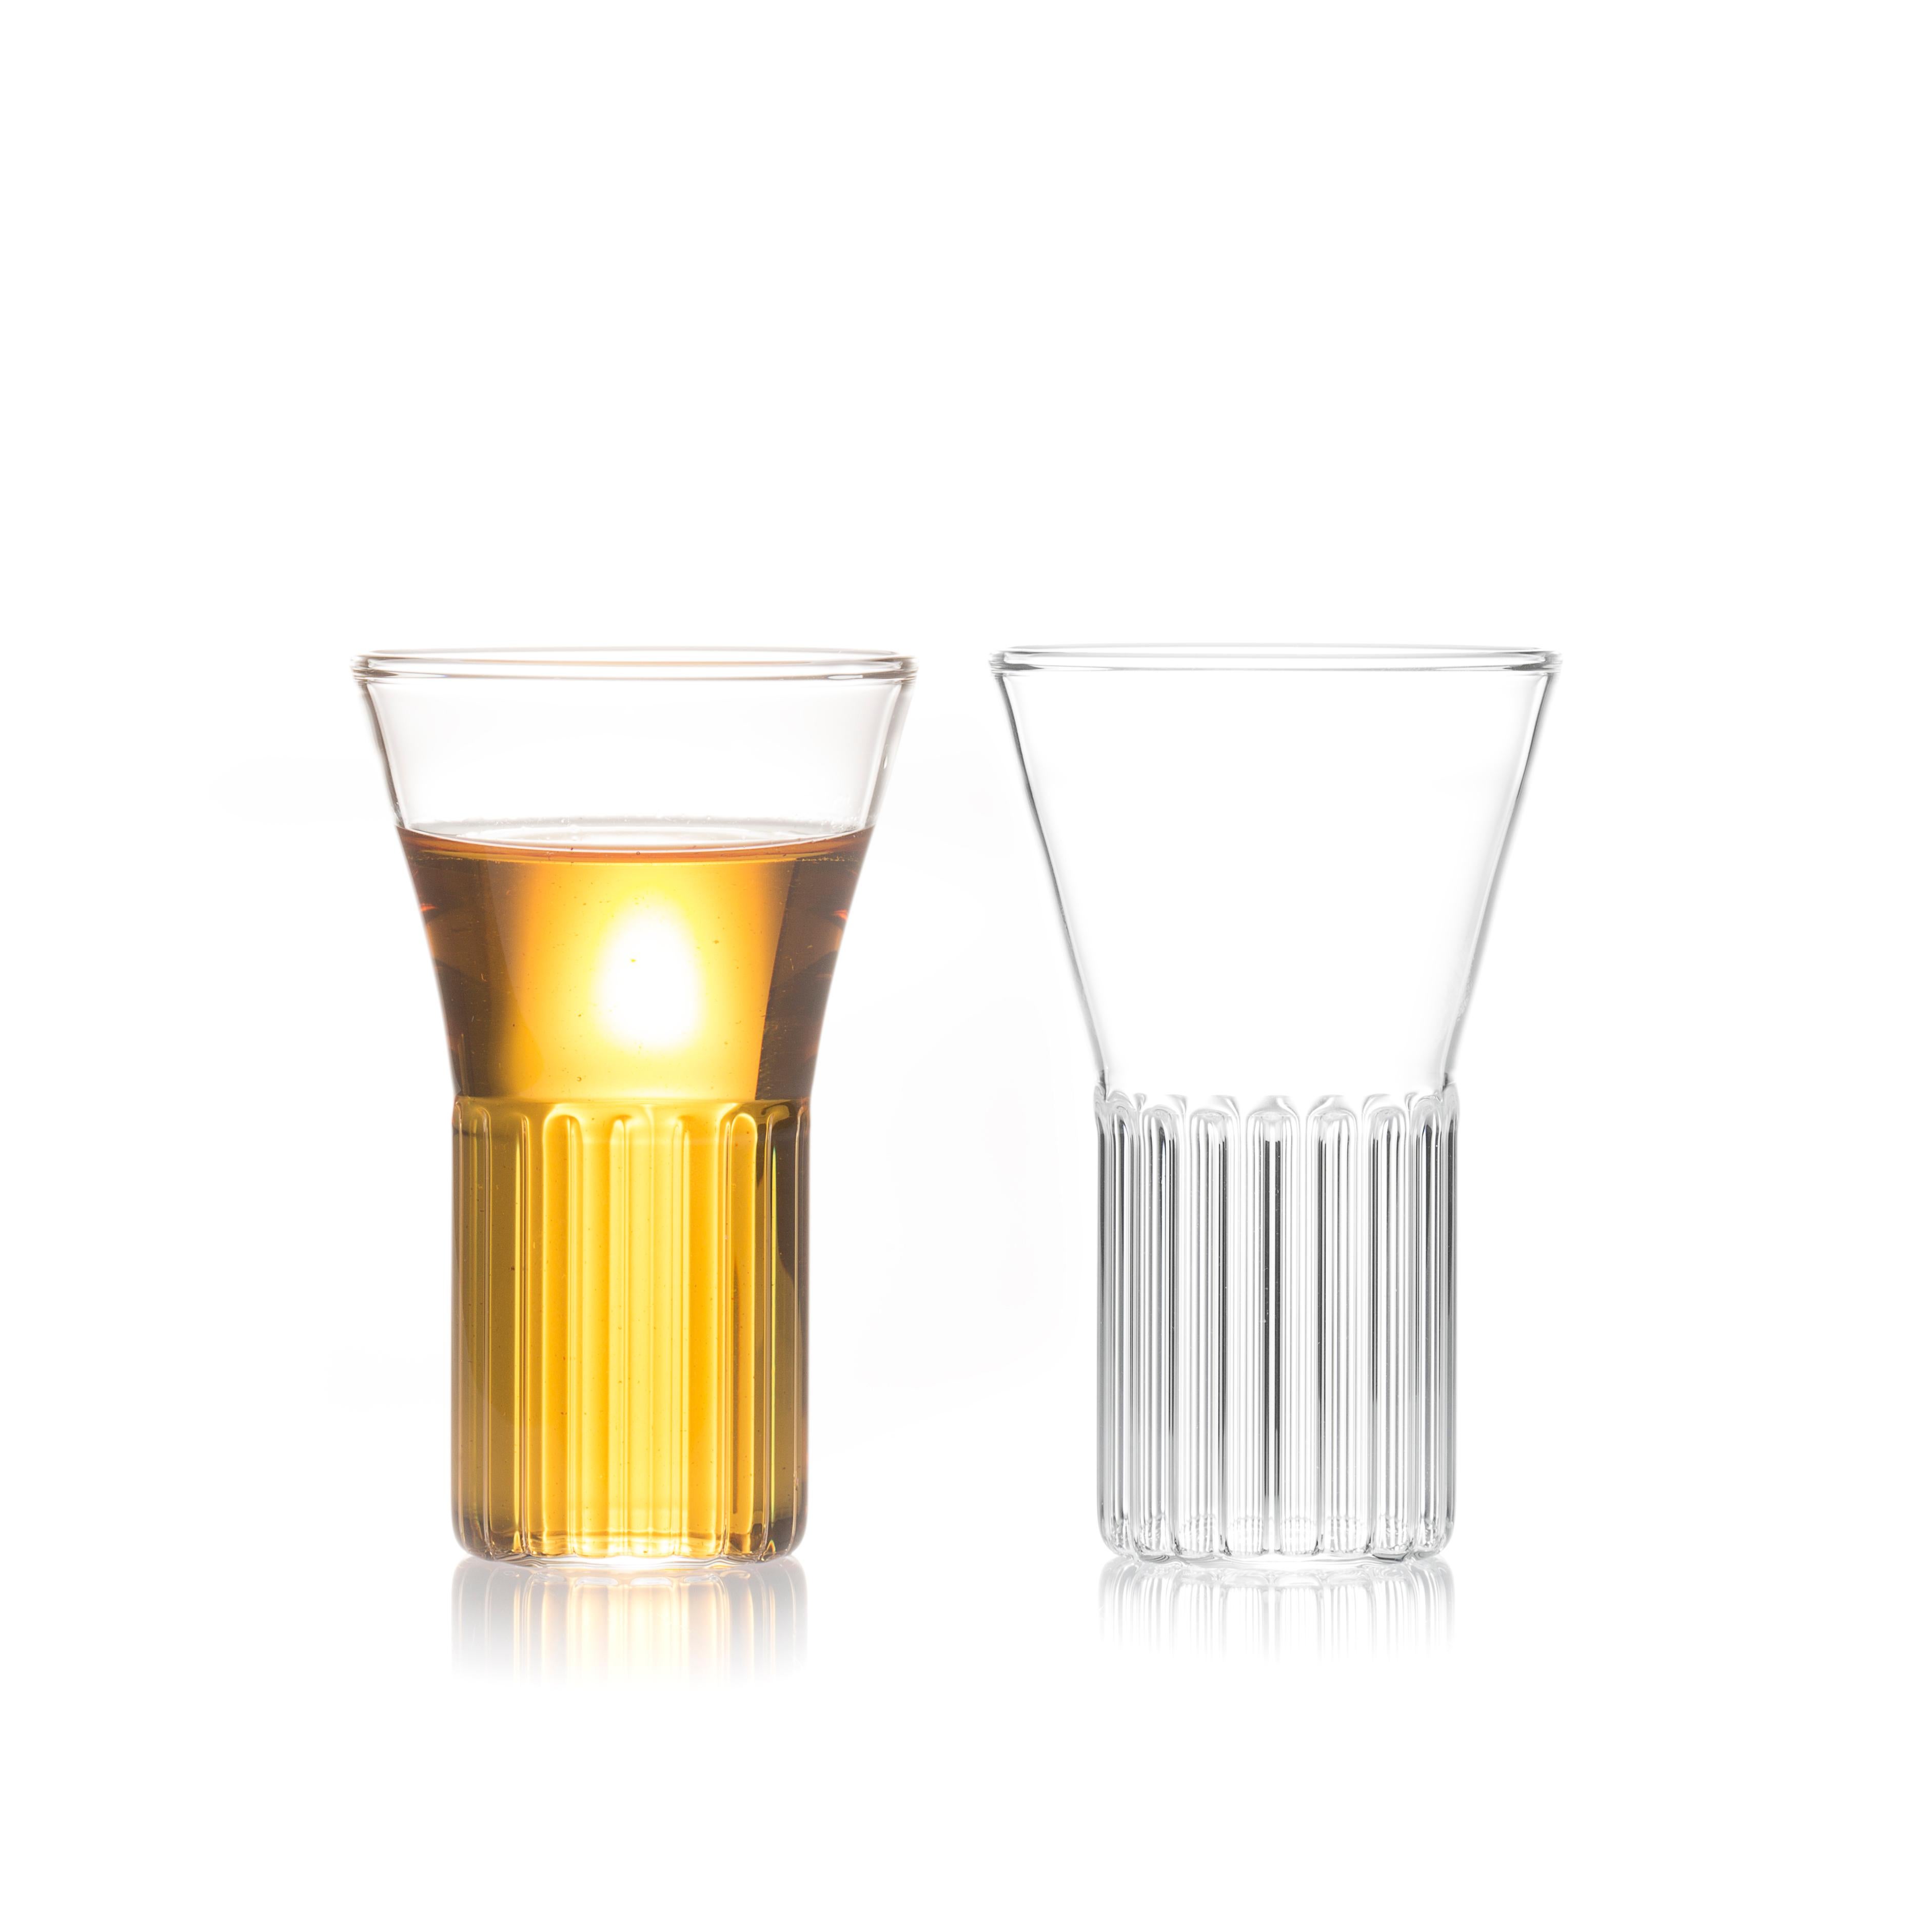 Rila Kleine Gläser, Satz mit zwei Gläsern

Inspiriert vom Rila-Kloster ist die klare, tschechische, zeitgenössische Rila Collection eine Serie von Gläsern, die sich ideal für Getränke eignen, von Wein und Wasser bis hin zu Martinis und anderen